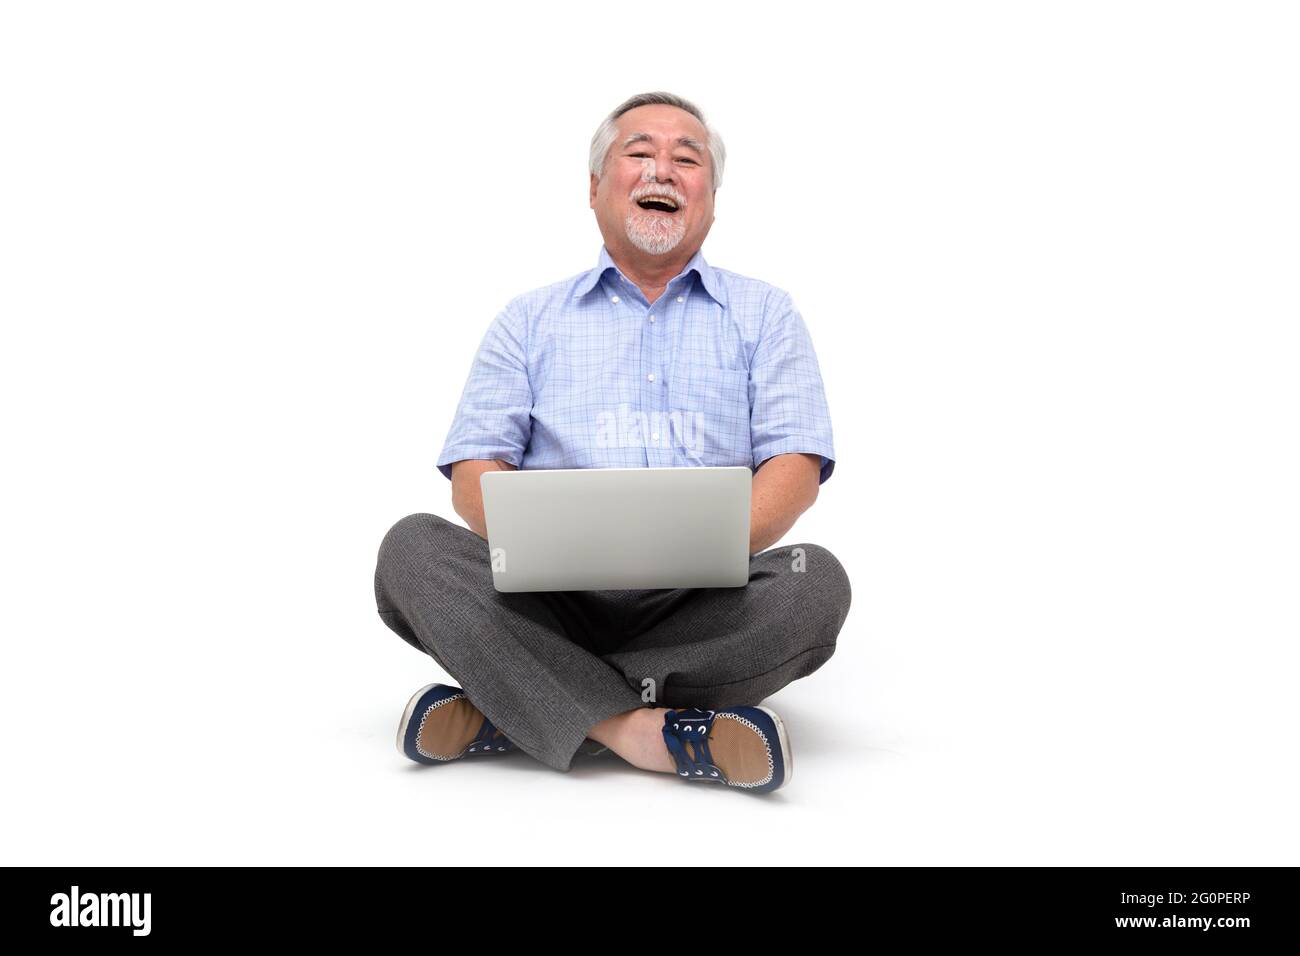 Aufgeregt Senior asiatischen Mann glücklich feiert Sieg Online-Geschäftserfolg und sitzt auf dem Boden mit Laptop isoliert auf weißem Hintergrund, Free Stockfoto